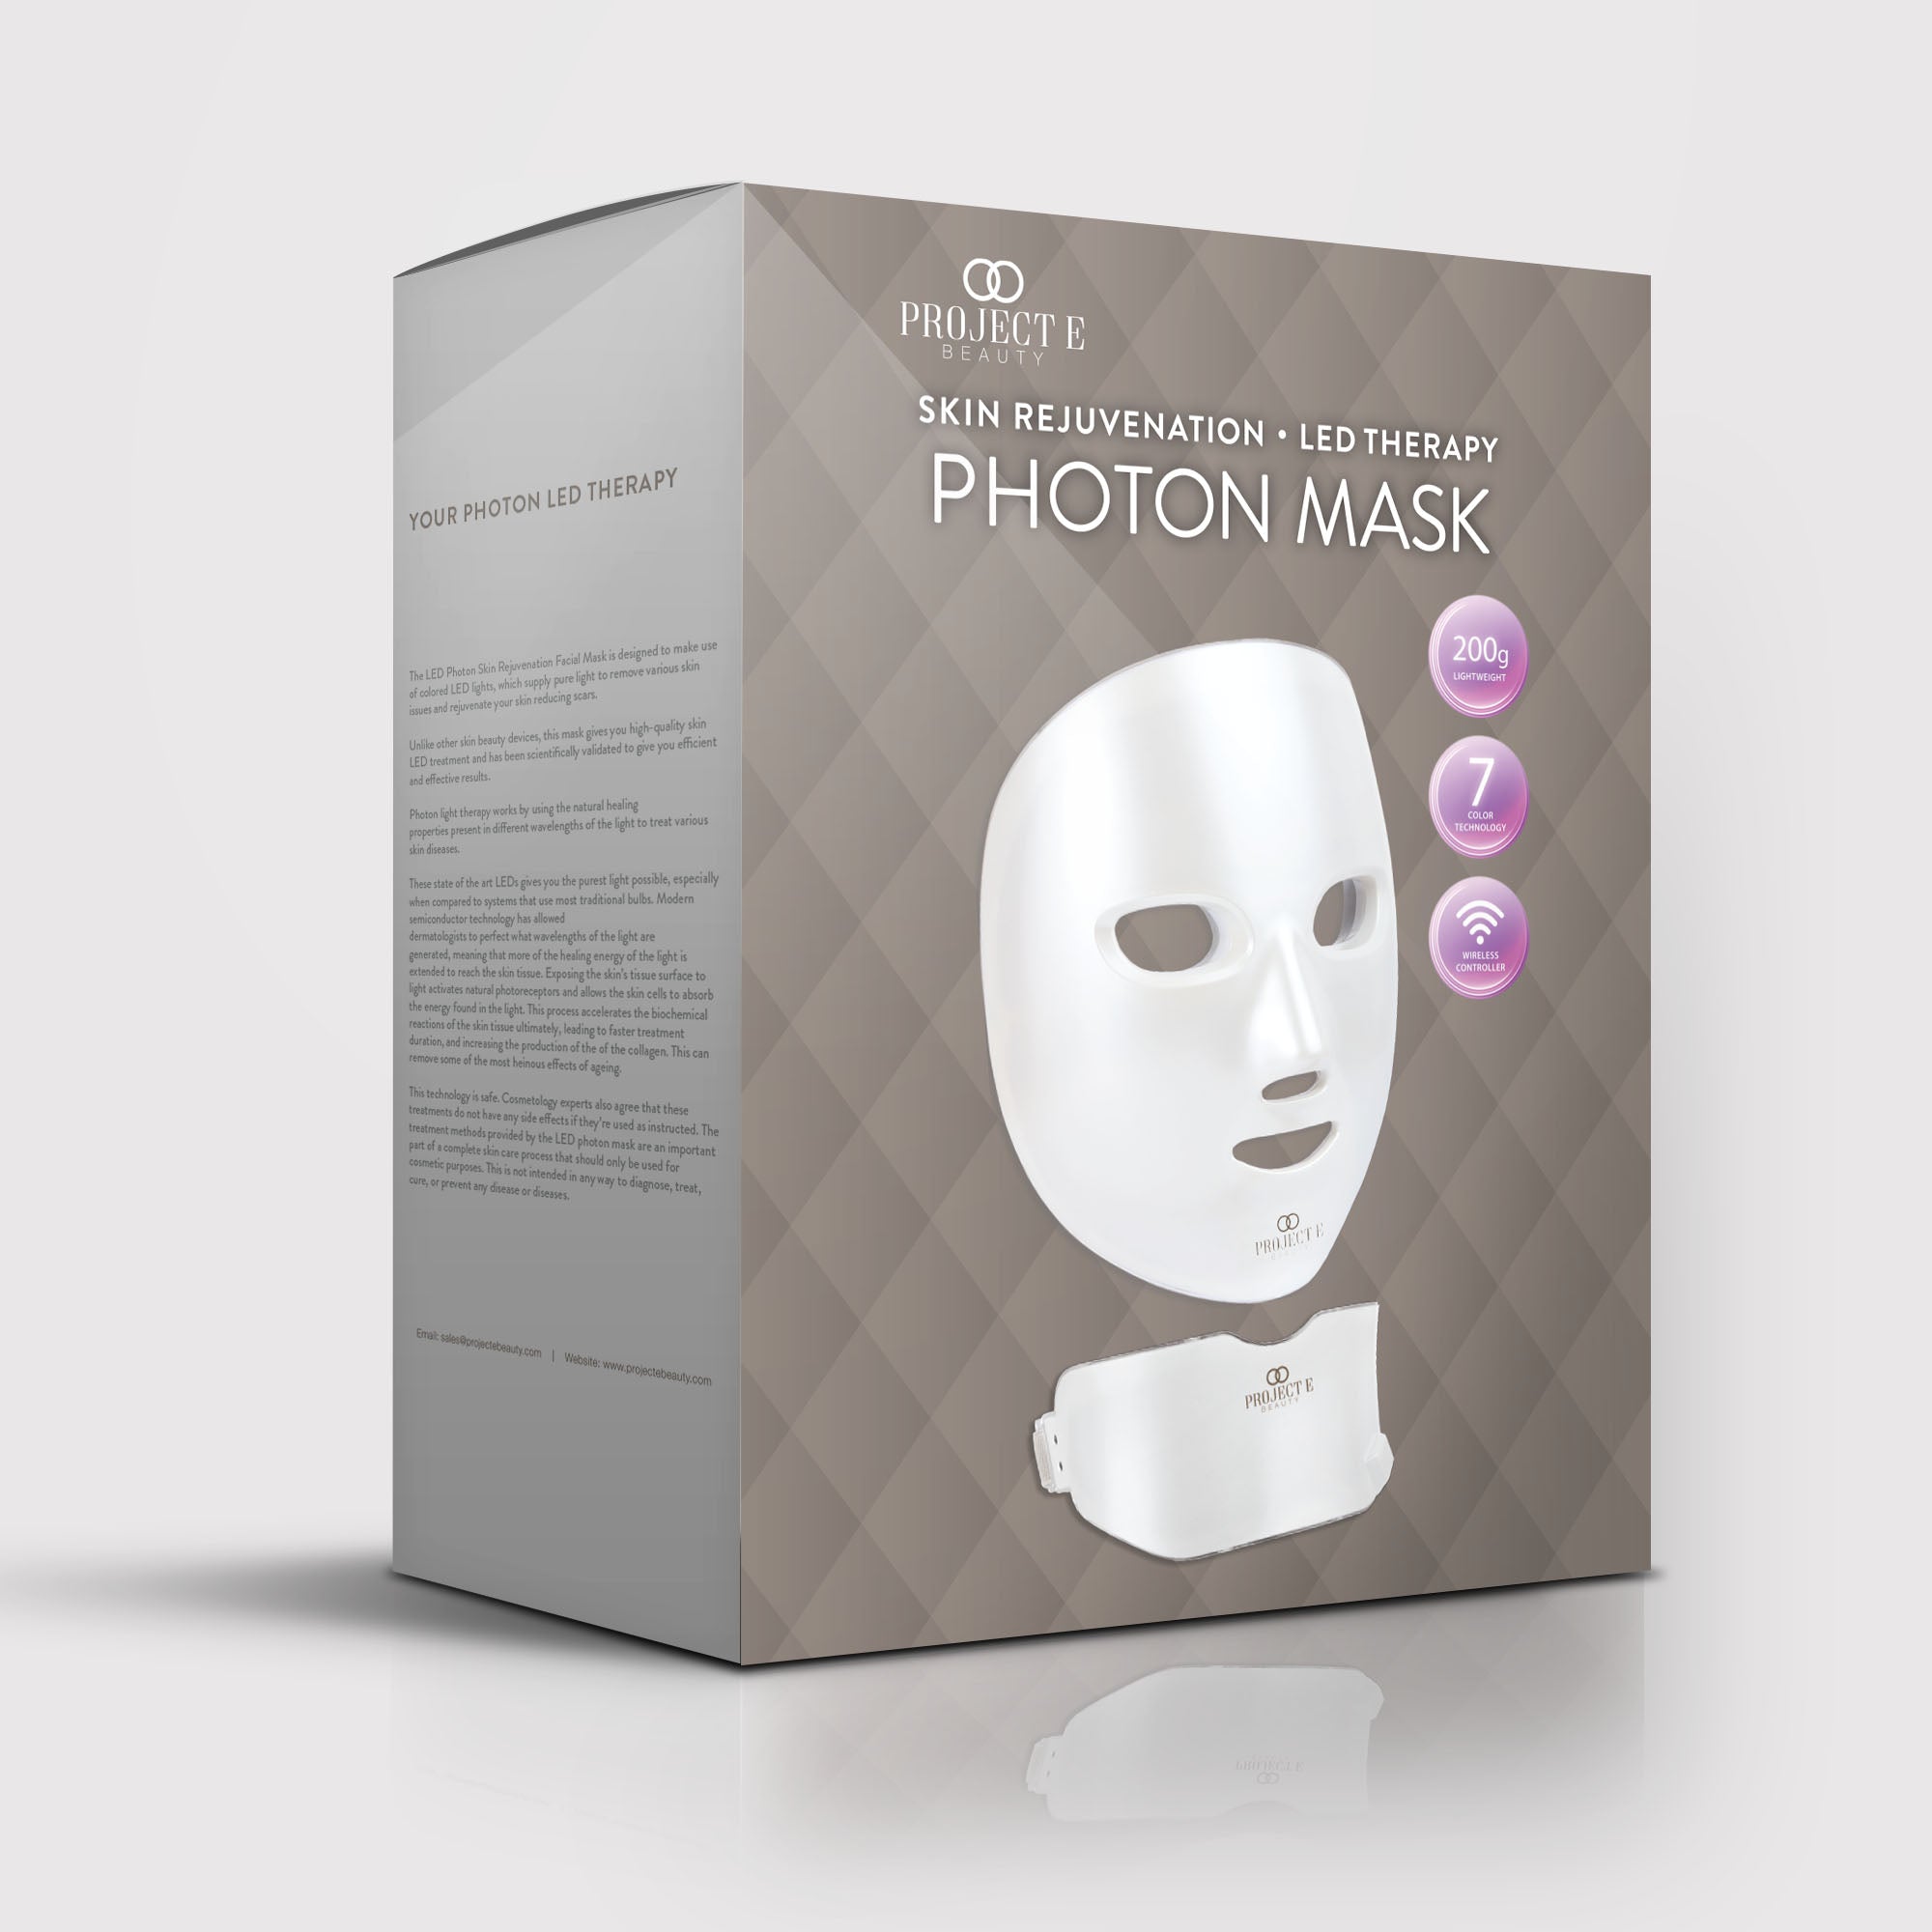 LightAura Plus | LED Face & Neck Mask